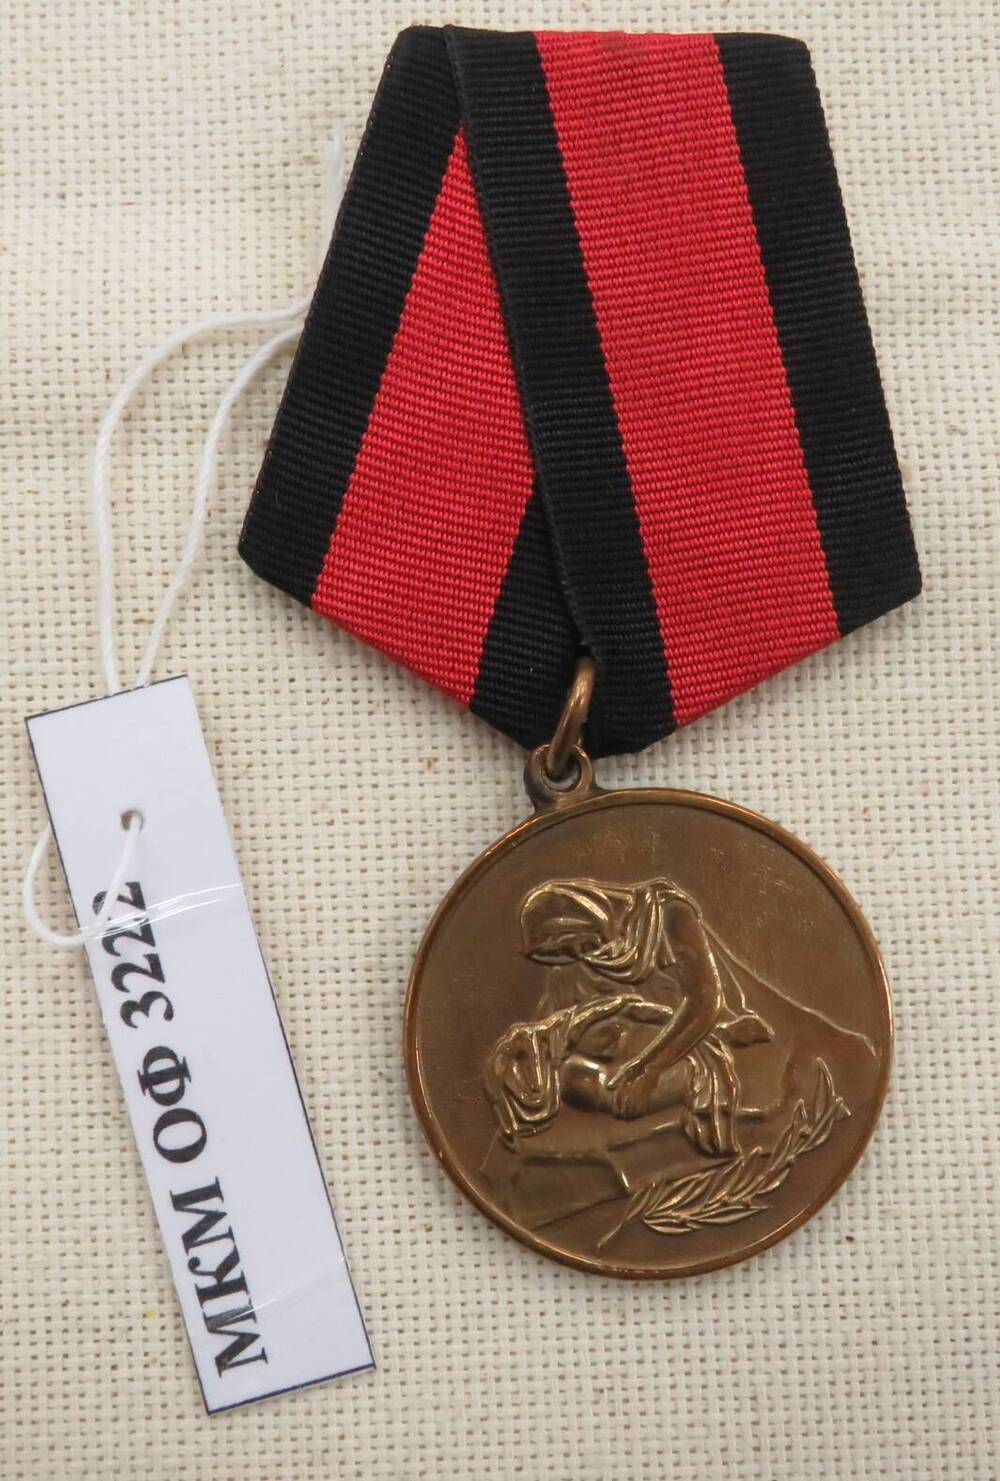 Медаль «Шагнувши в бессмертие» № 1121 Несытова Ивана Ивановича